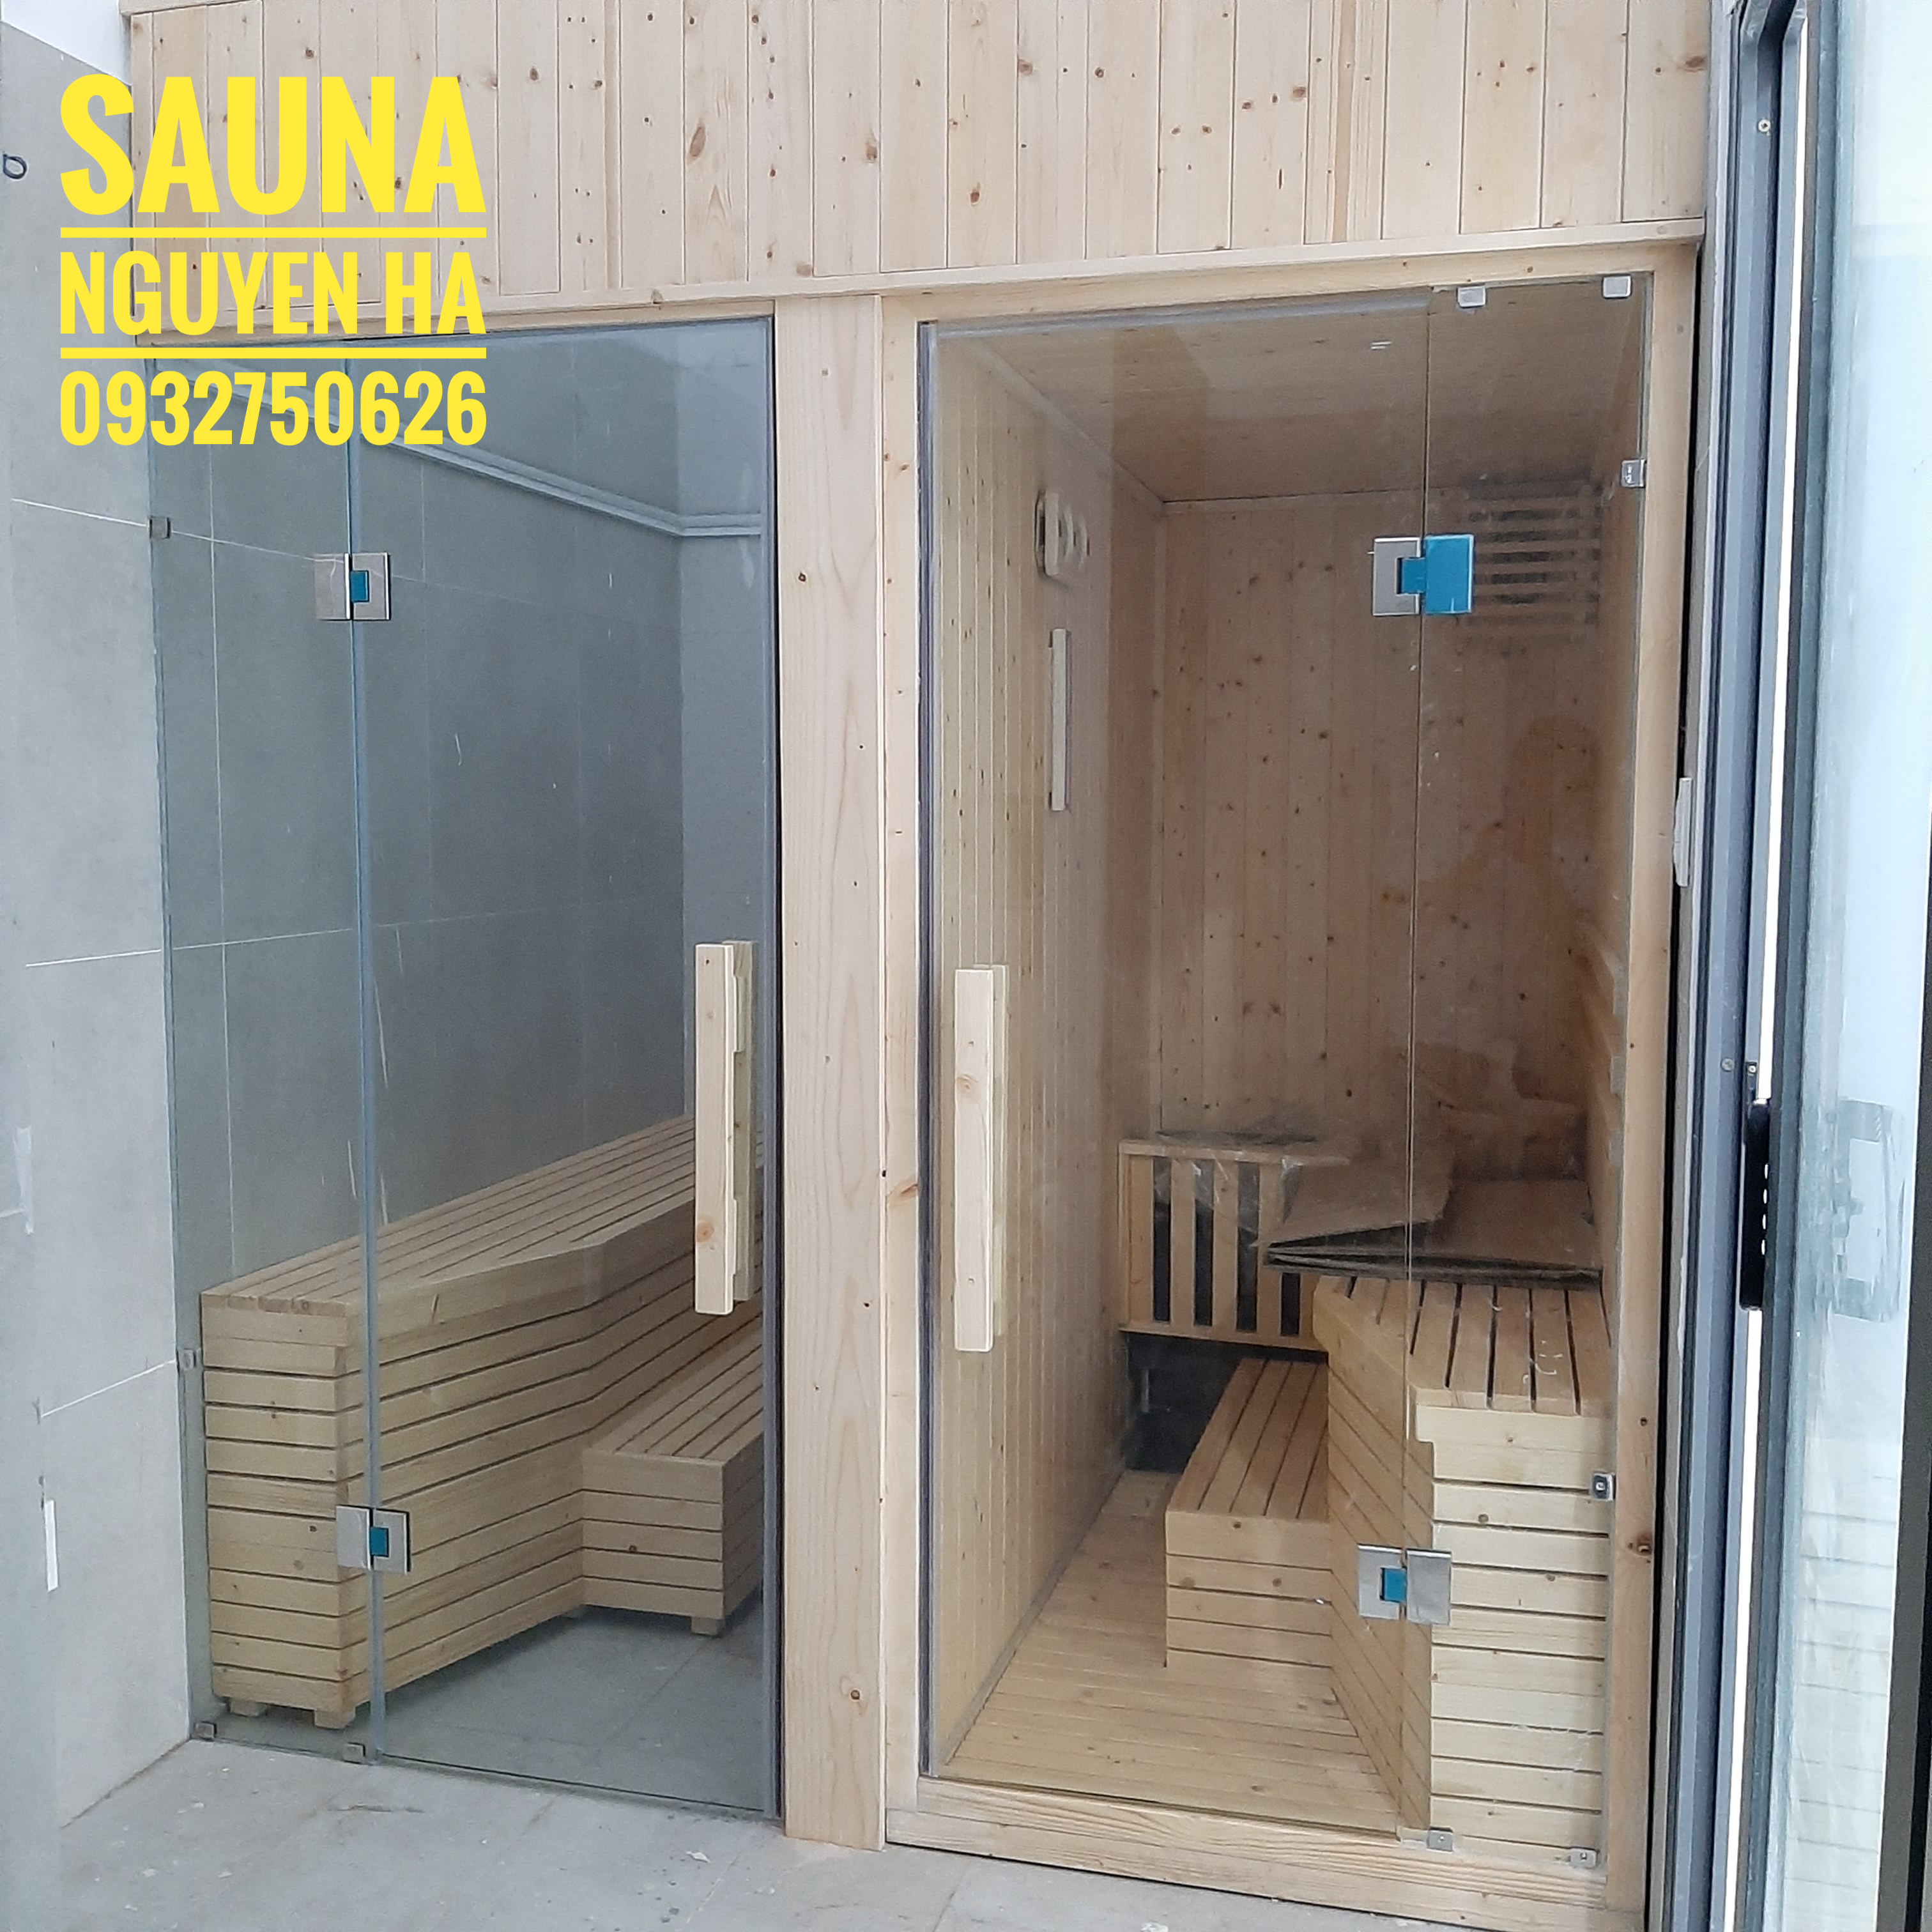 SAUNA NGUYEN HA/SAUNA NH_Cặp Đôi Sauna and Steam 1000x2000